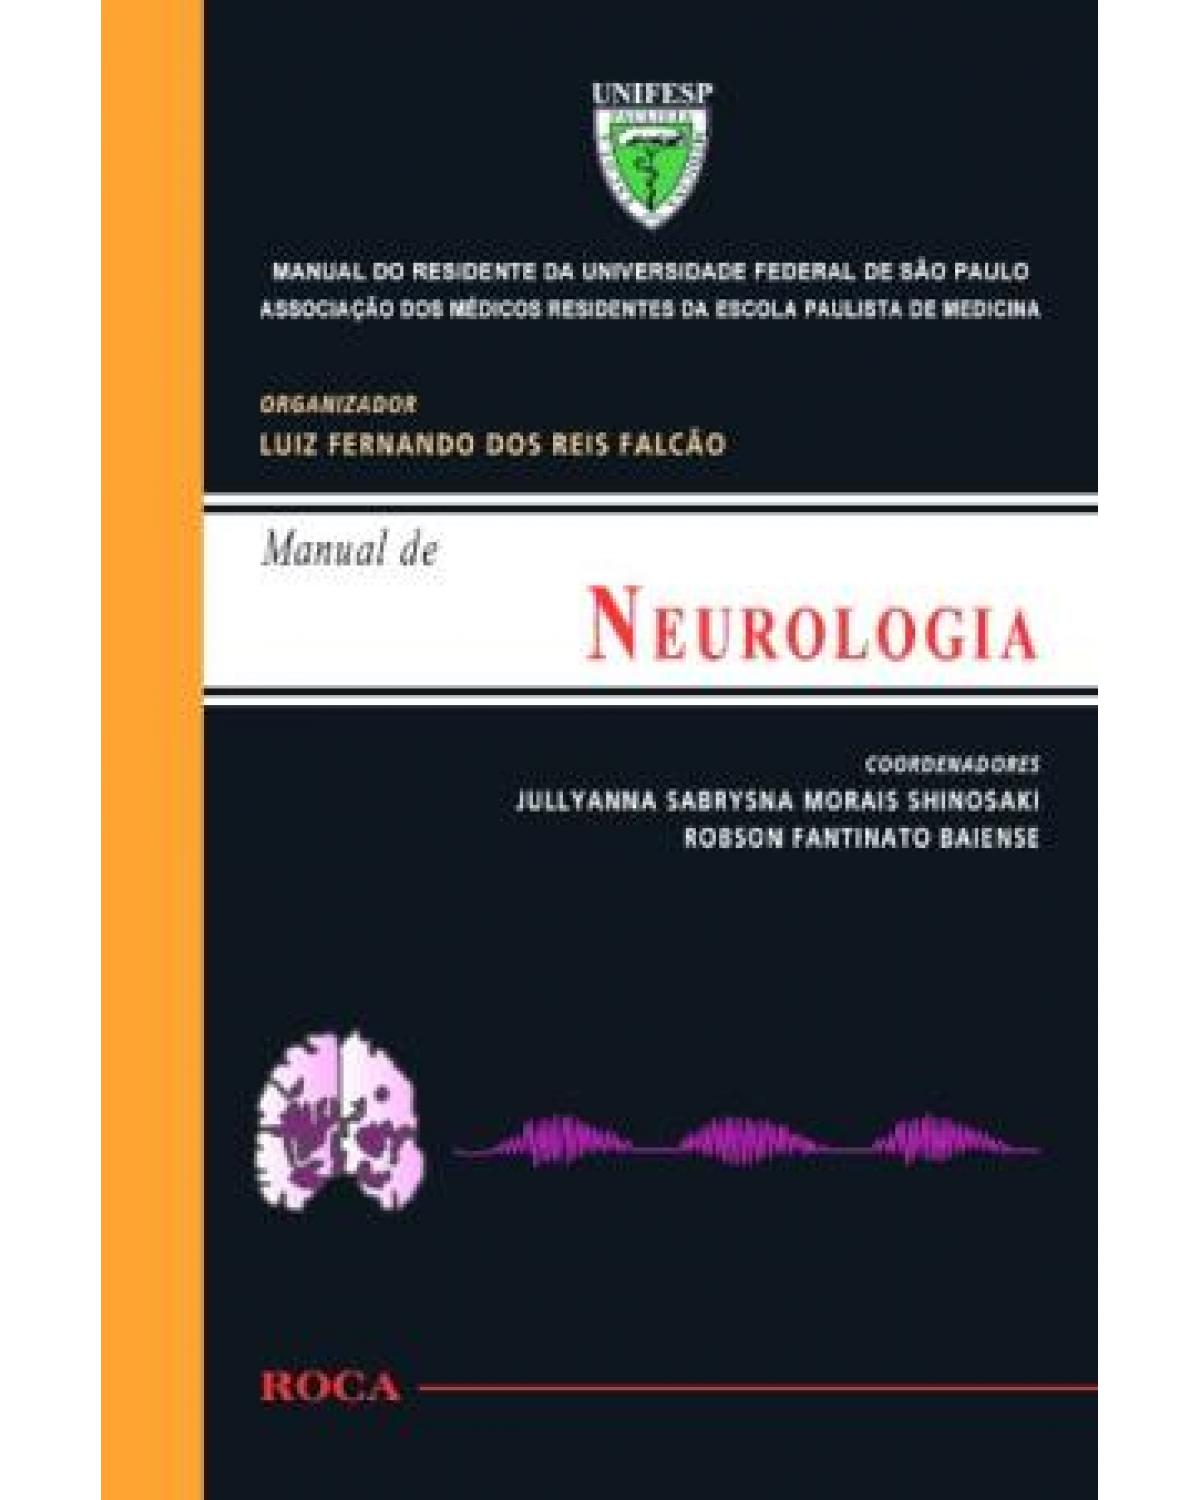 Manual de neurologia - Manual do residente da Universidade Federal de São Paulo (UNIFESP) - 1ª Edição | 2010